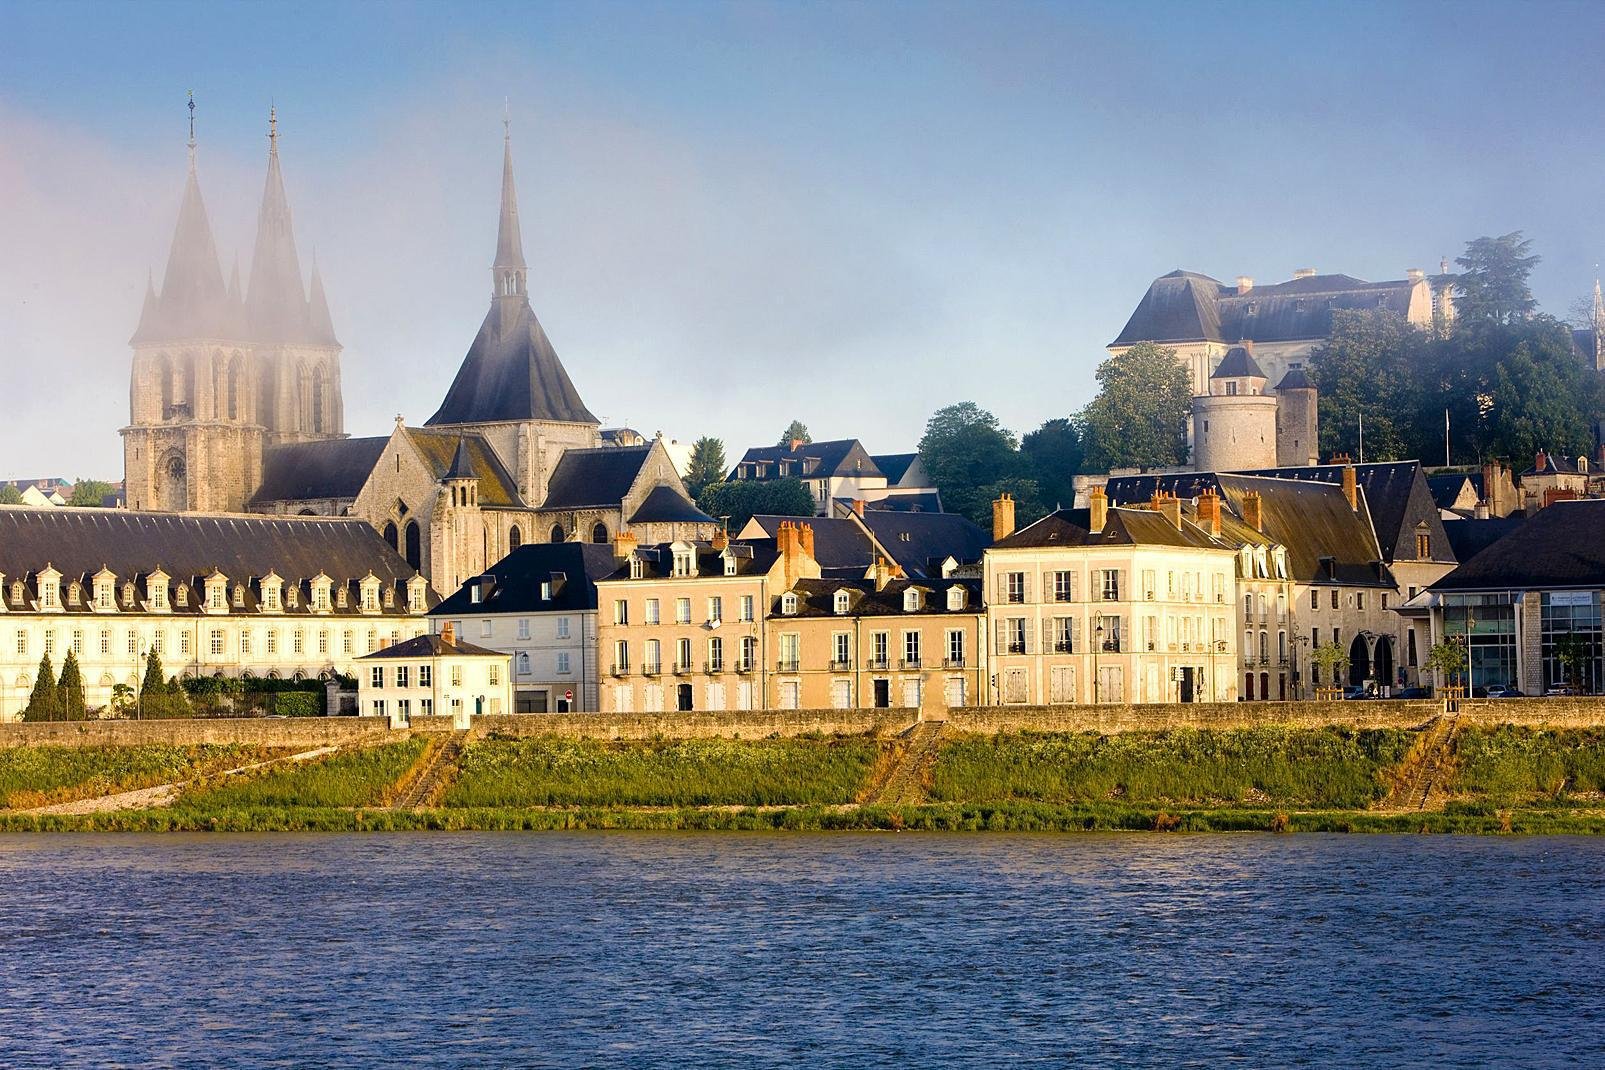 Résidence royale de Louis XII, la ville de Blois, chef-lieu du Loir-et-Cher est aussi la plus peuplée du département. Ville d'arts et d'histoire, Blois est classée depuis 10 ans au Patrimoine mondial de l'Unesco en tant que « Paysage naturel ». Riche de son activité associative, culturelle et sportive, Blois joue un rôle d'équilibre entre Tours et Orléans.
Blois est également la porte ouverte sur ...